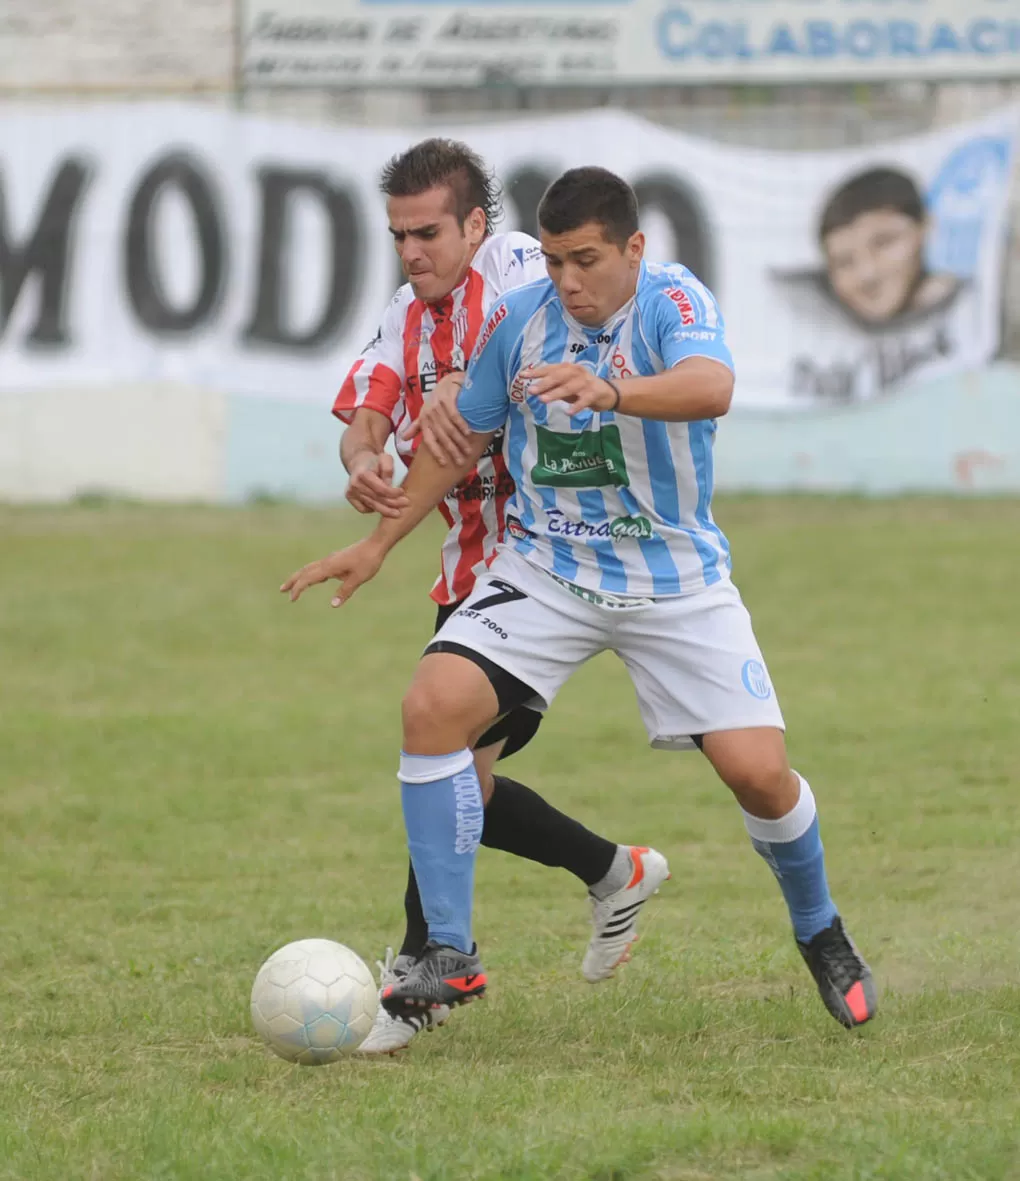 CASTIGO. Moreno (7) no podrá jugar en Concepción FC en 2015. la gaceta / foto de osvaldo ripoll (archivo)